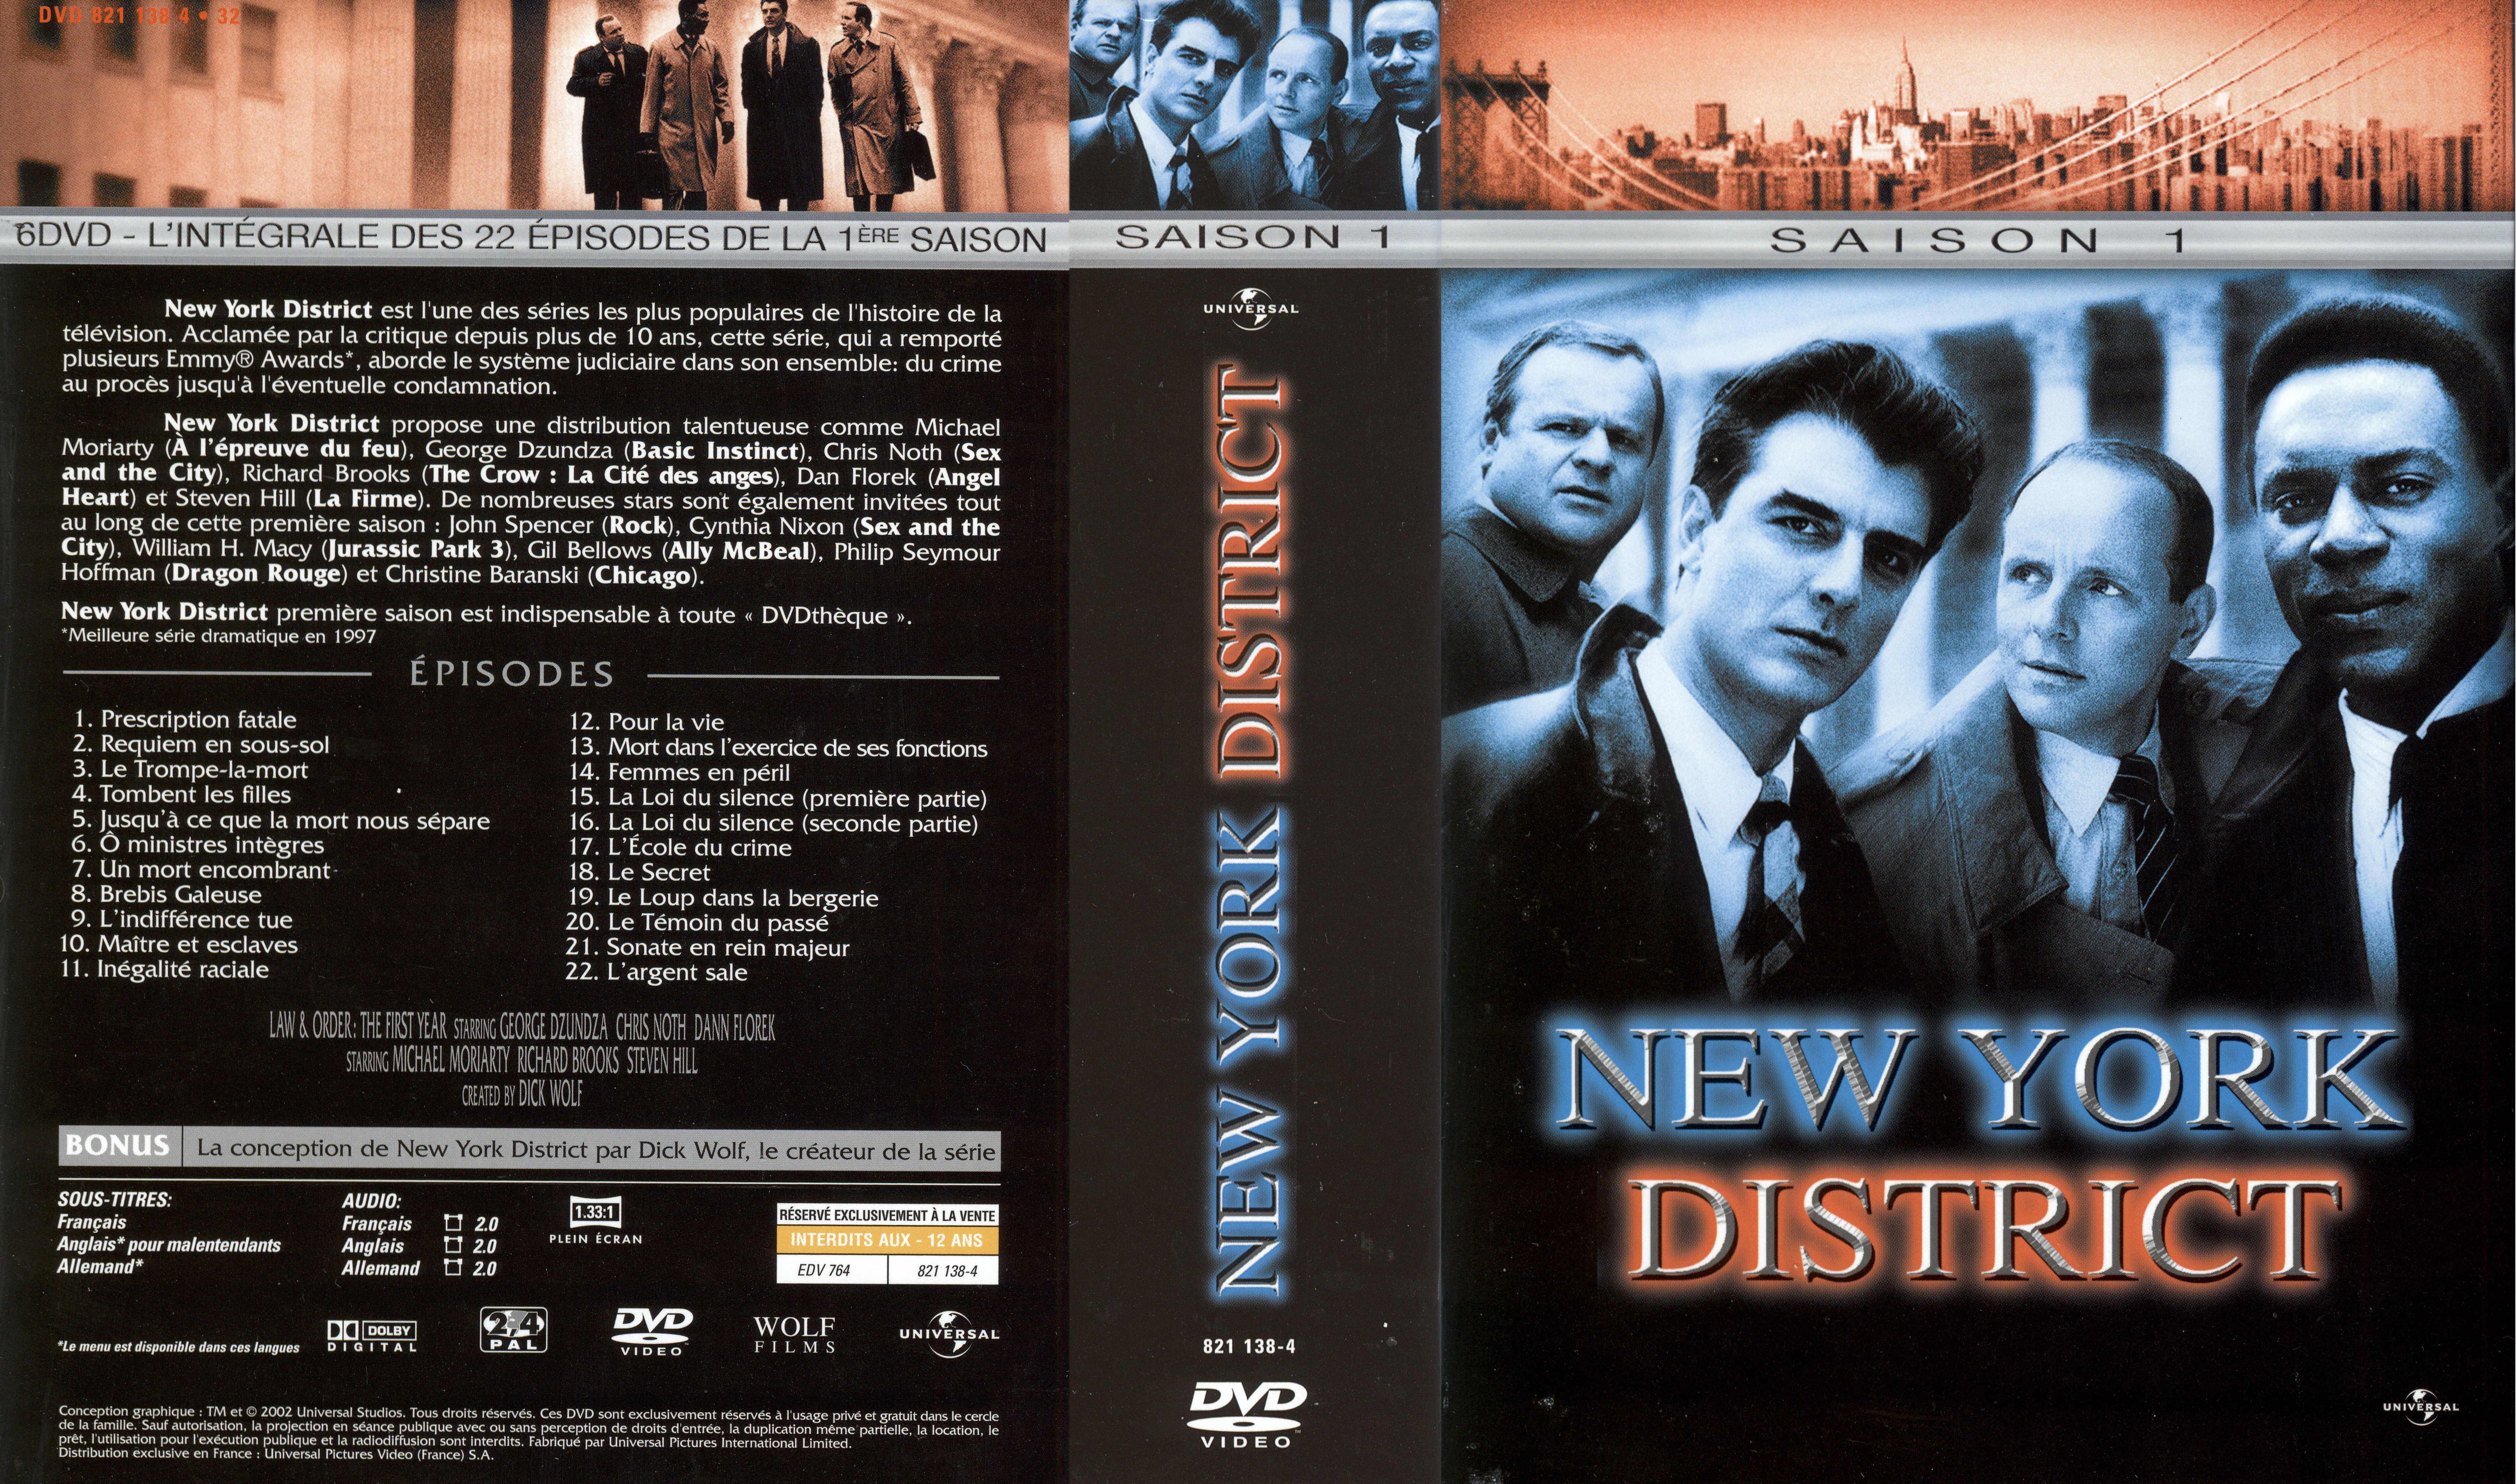 Jaquette DVD New York district Saison 1 COFFRET